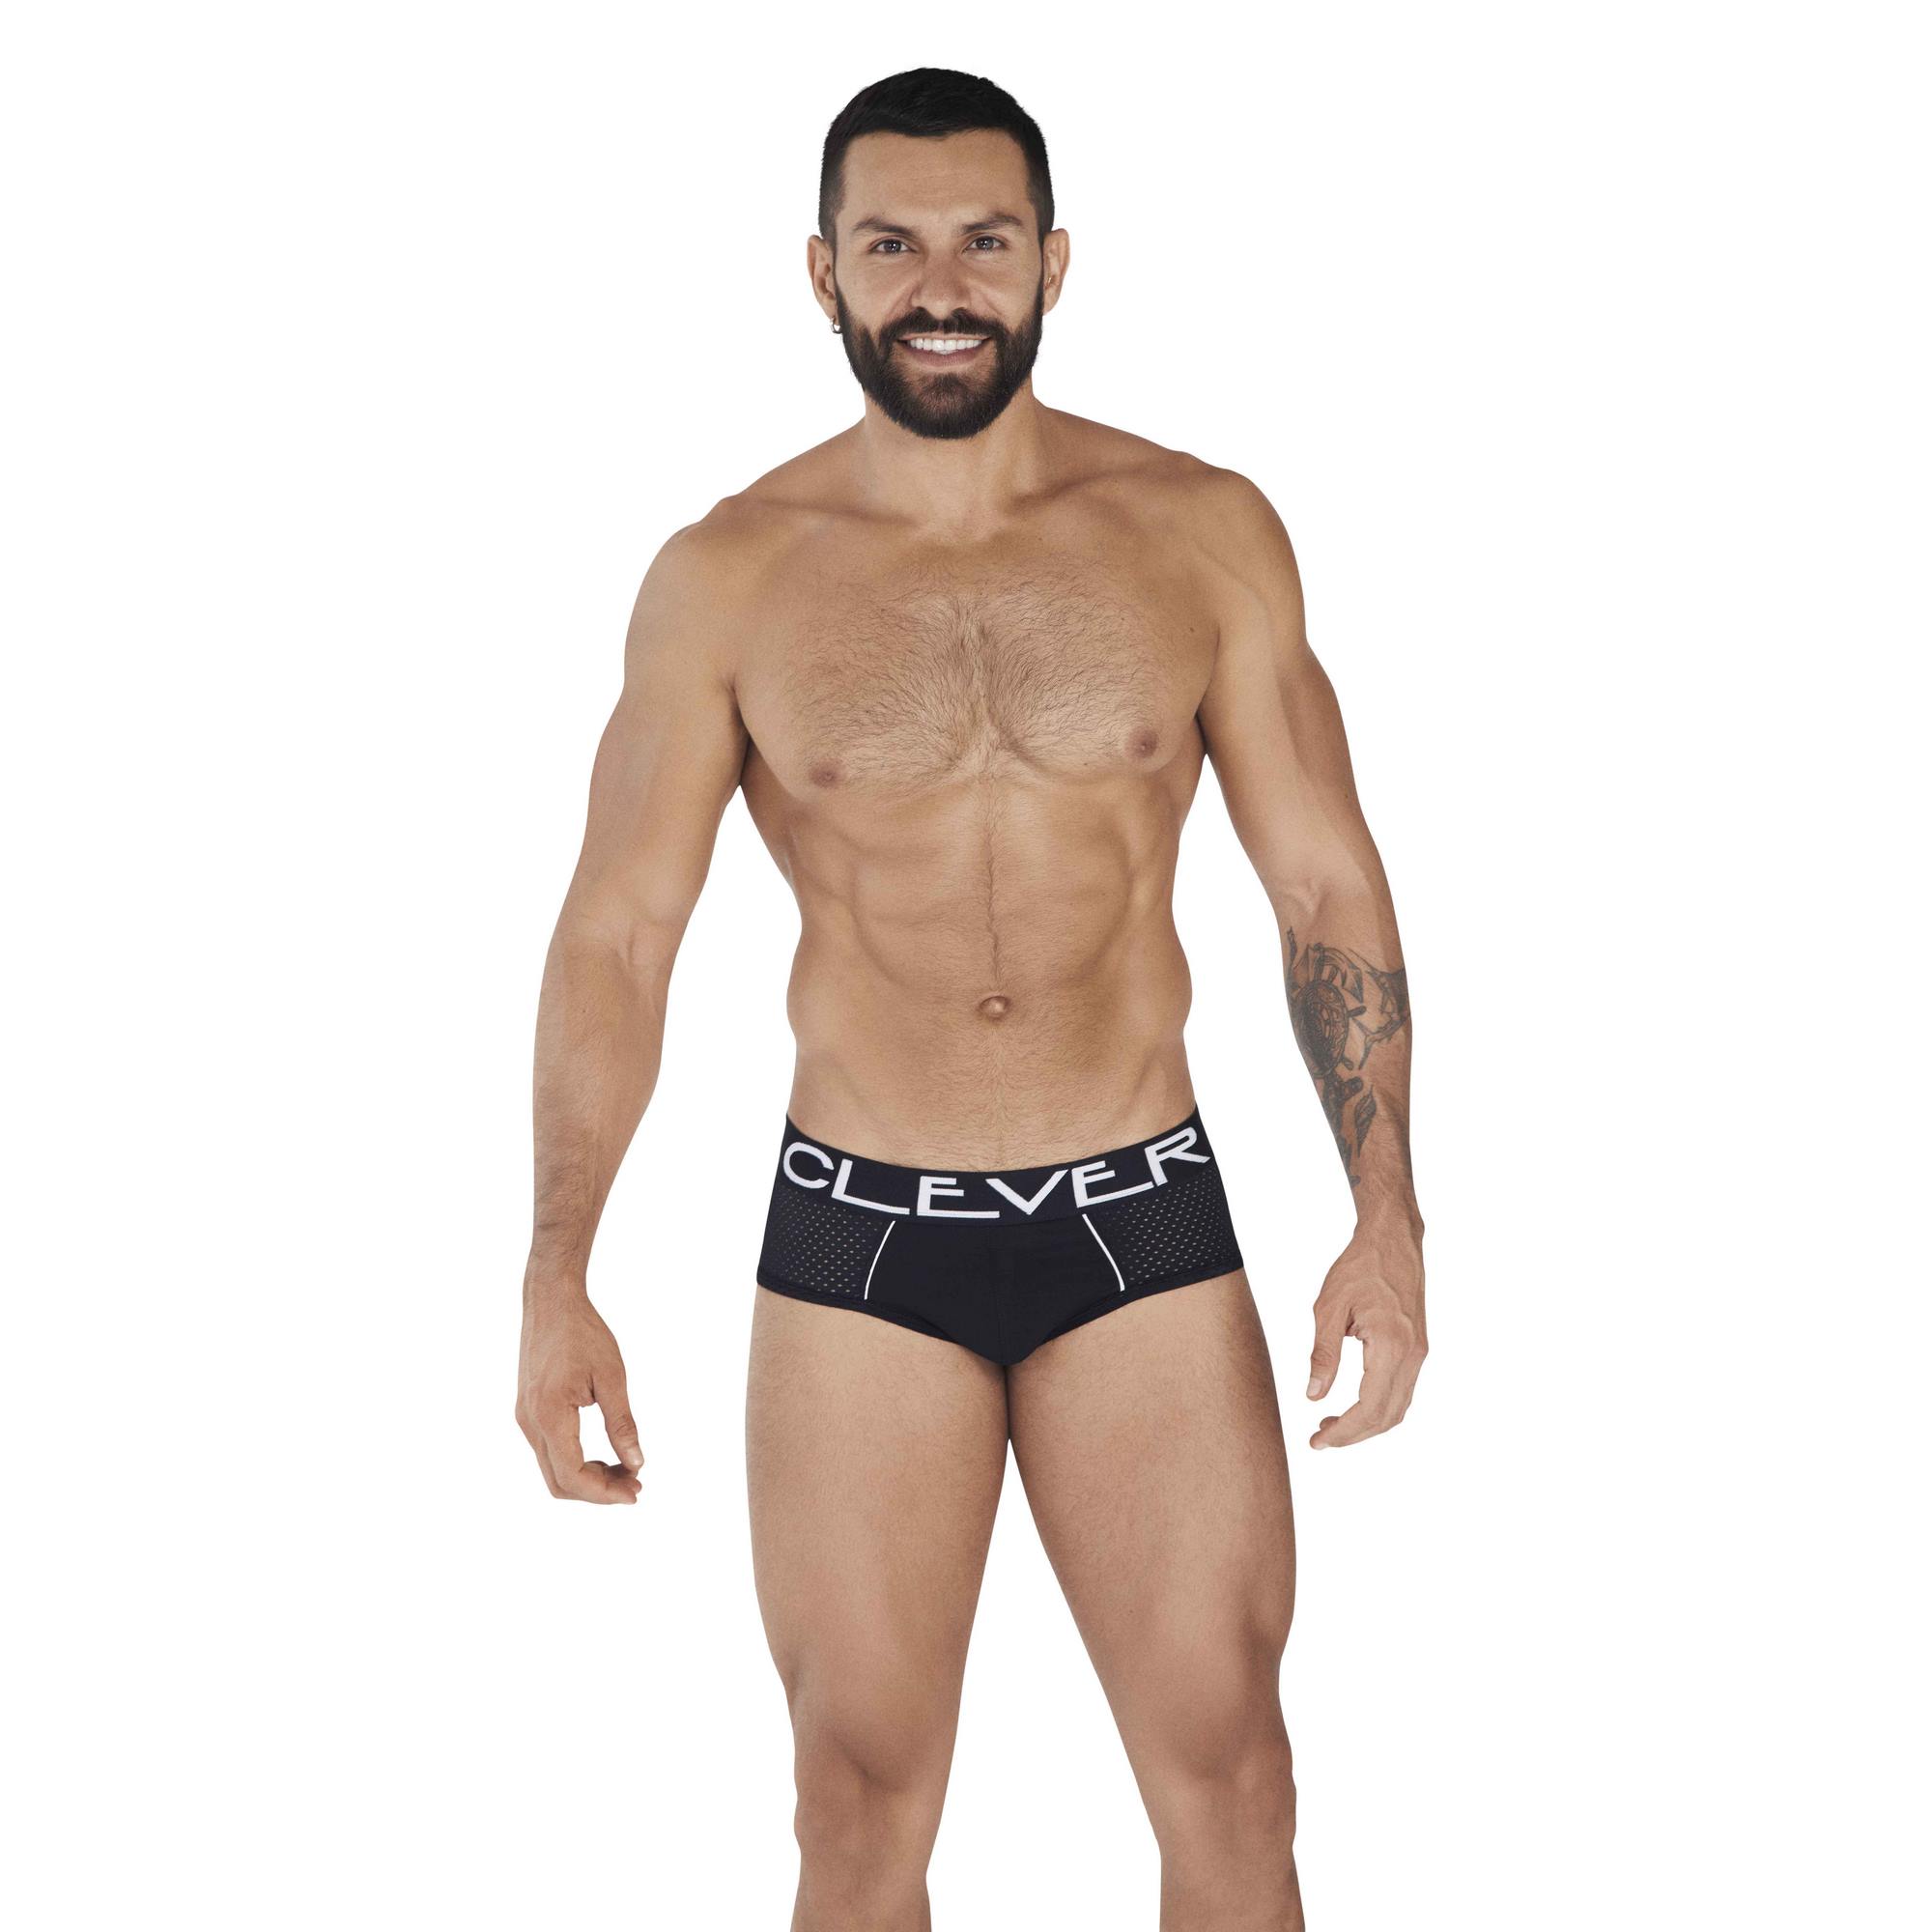 Трусы мужские Clever Masculine Underwear 0362 черные S